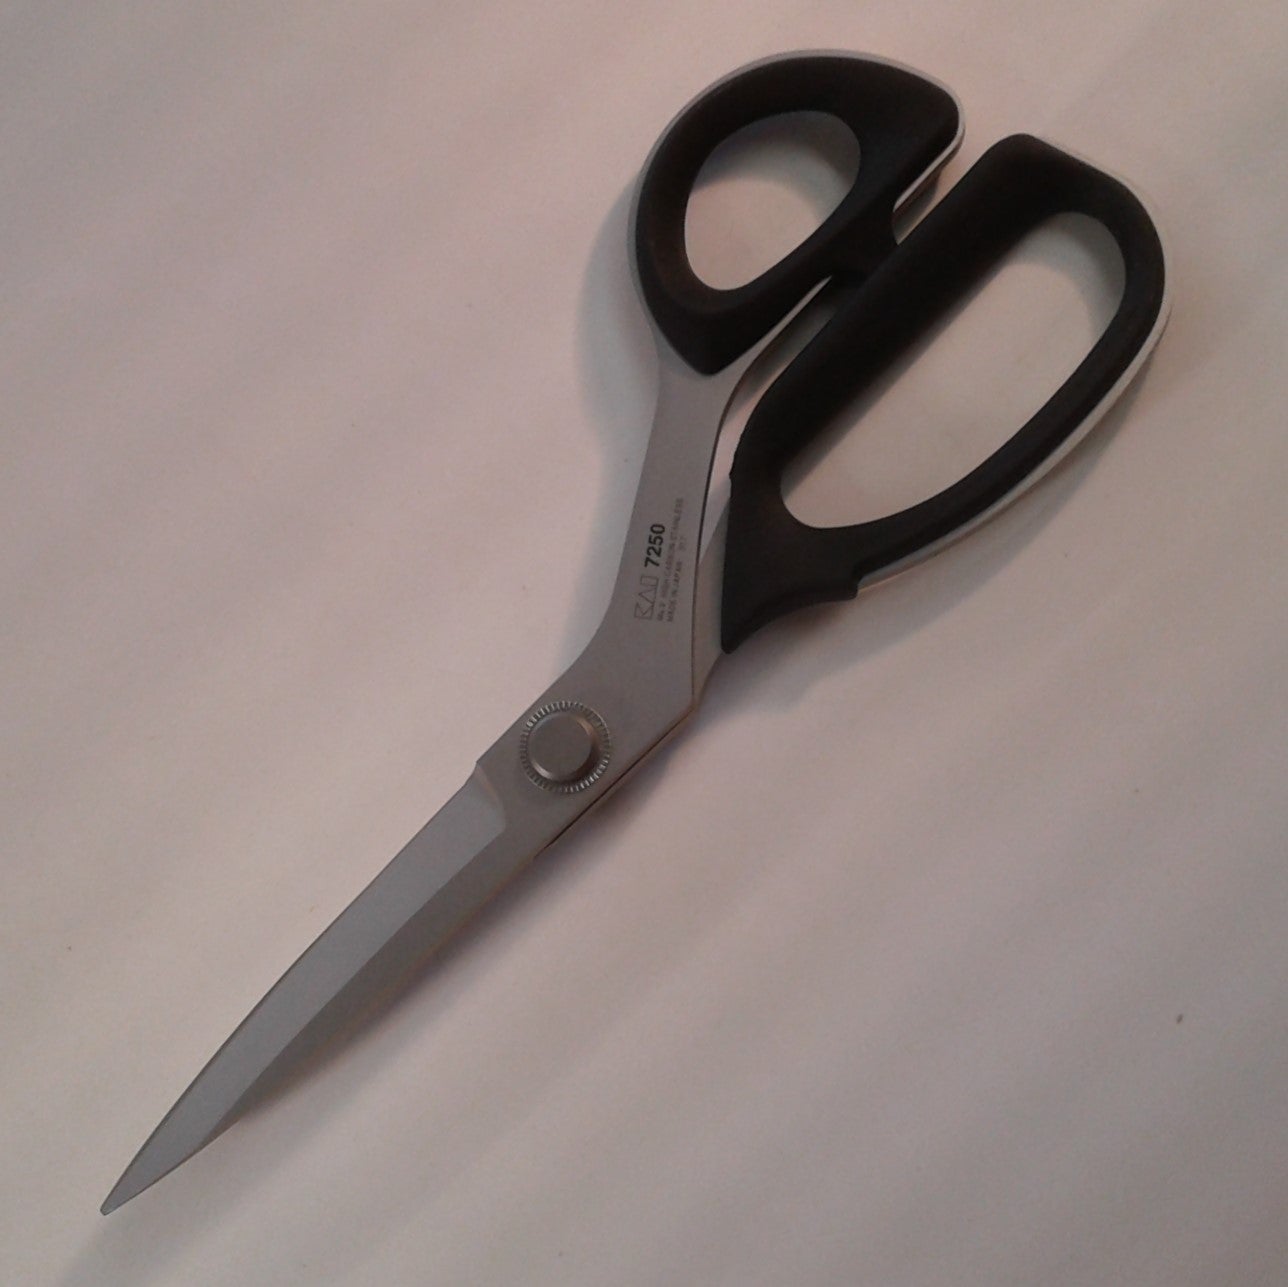 Kai #7250 Professional Scissors 10